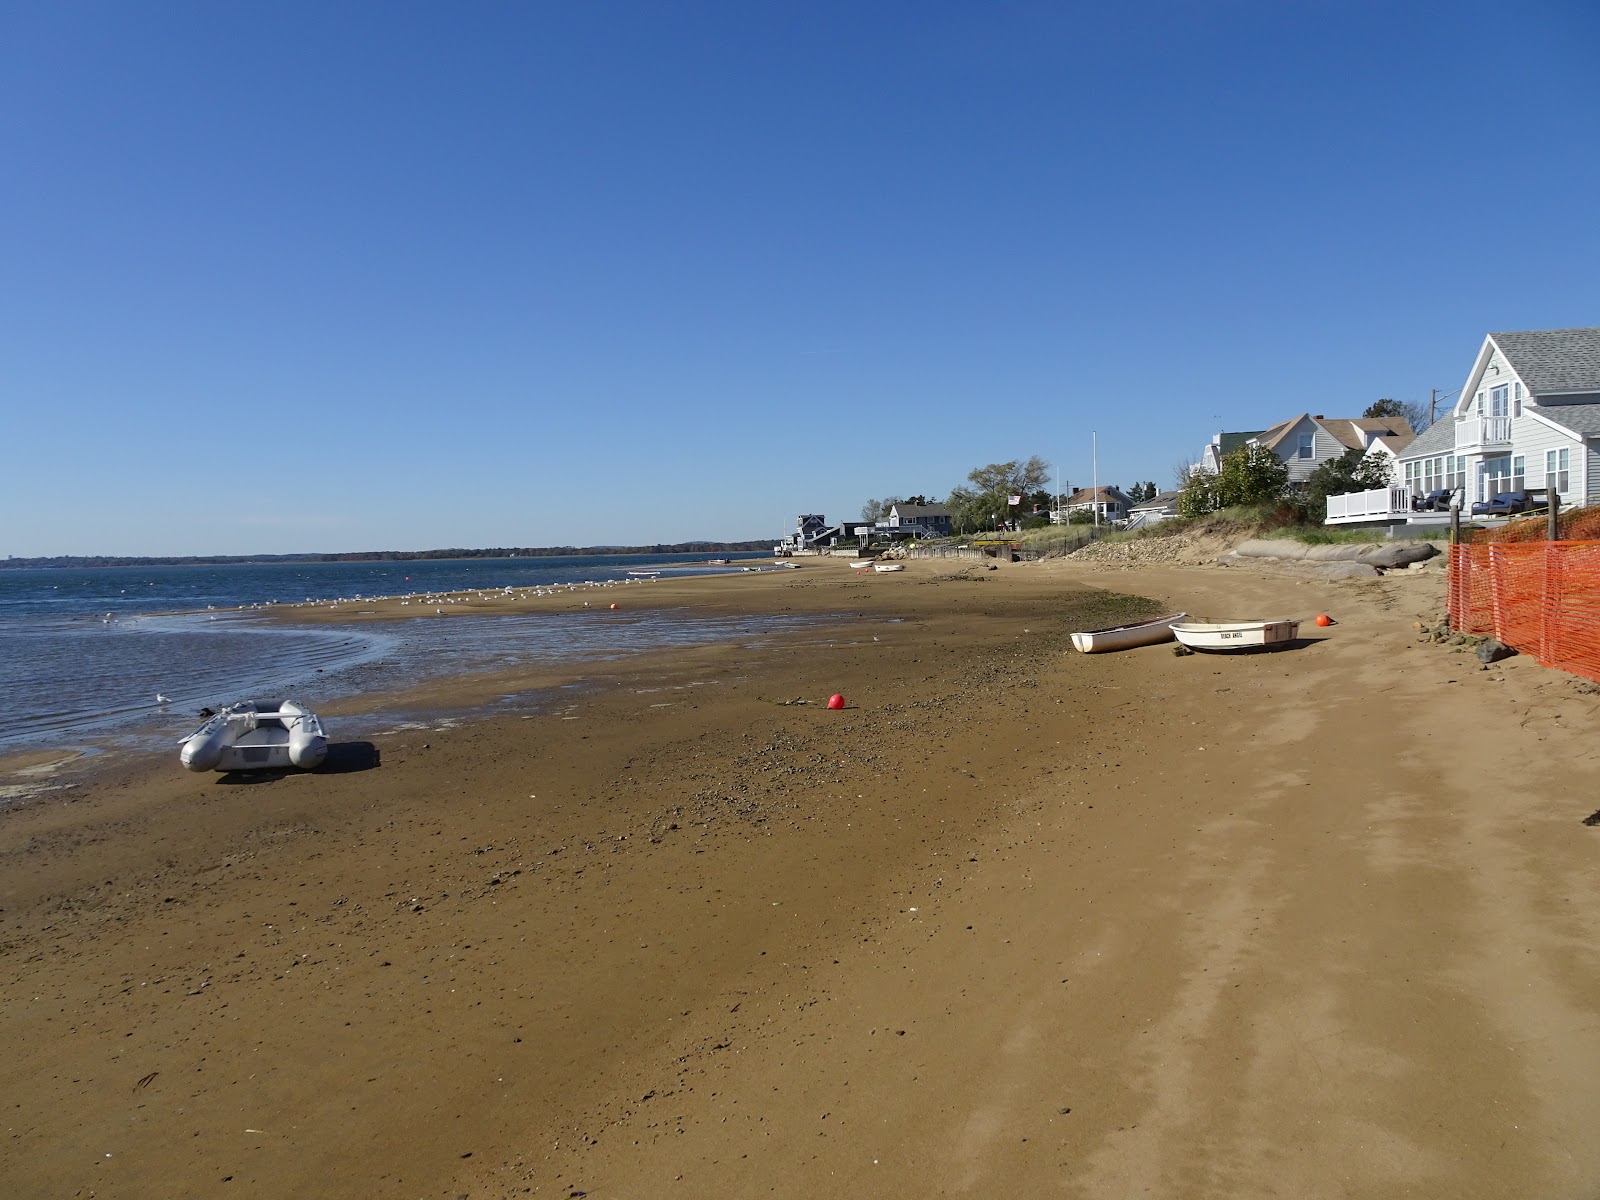 Plum Island beach的照片 便利设施区域